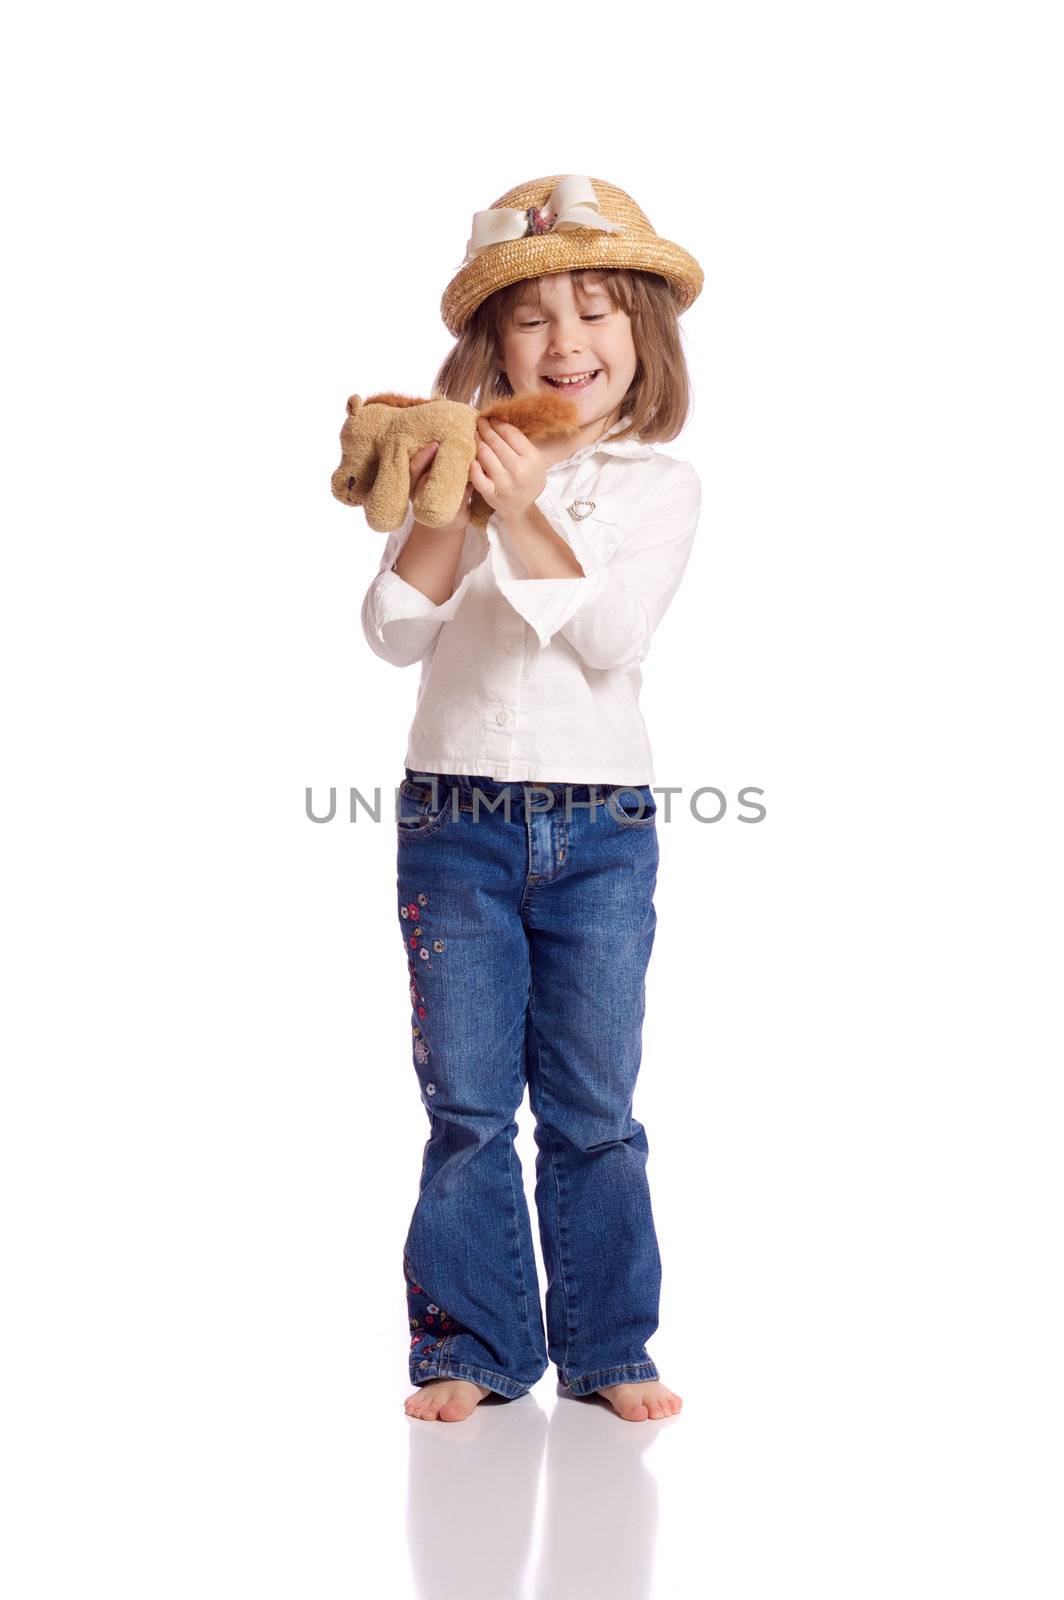 Cute little girl with a teddy